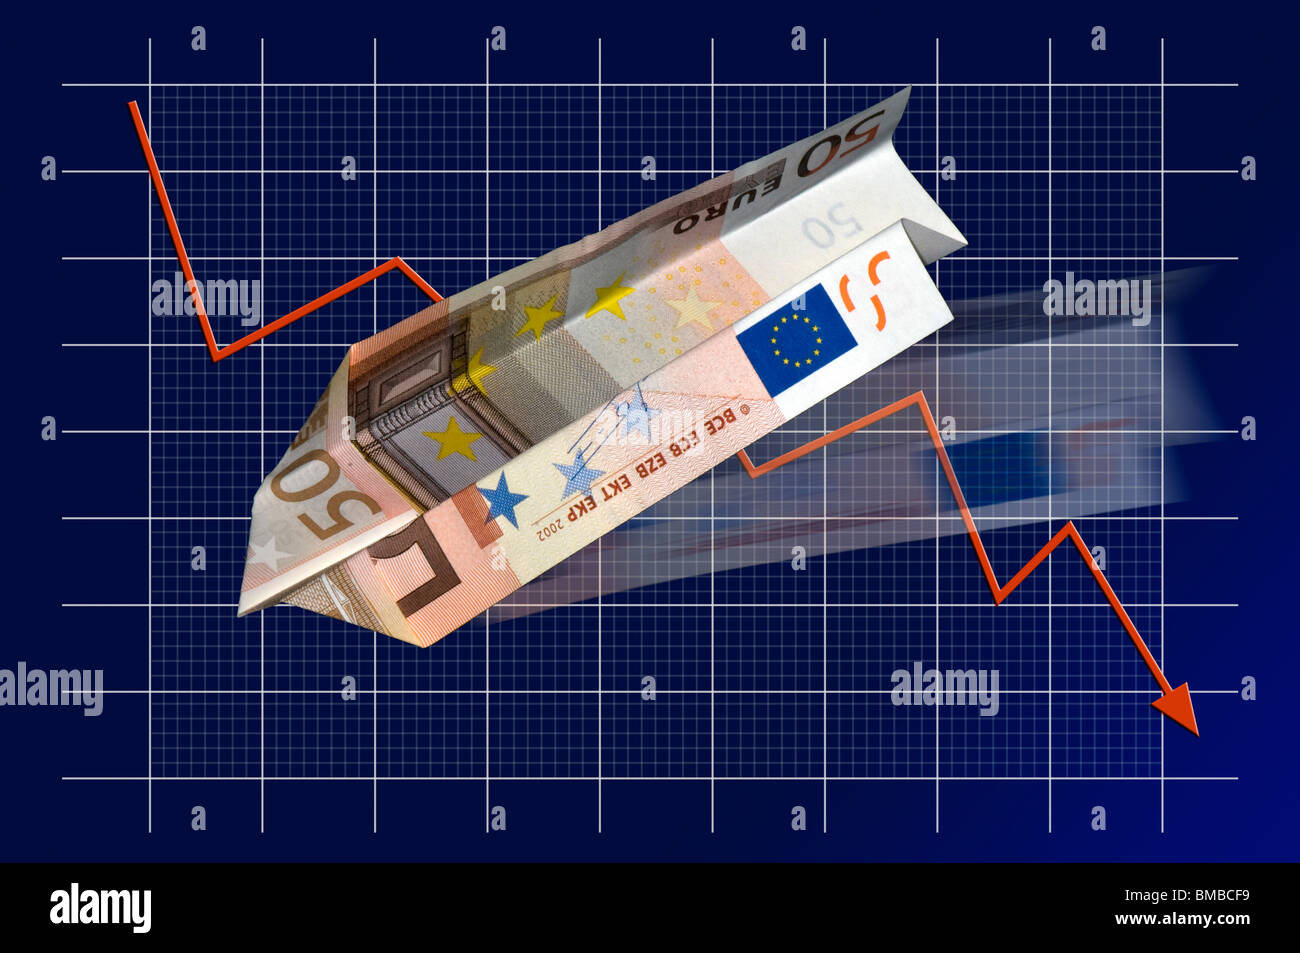 European debt crisis - are EU governments doing enough to curb the crash of the European financial markets? Stock Photo